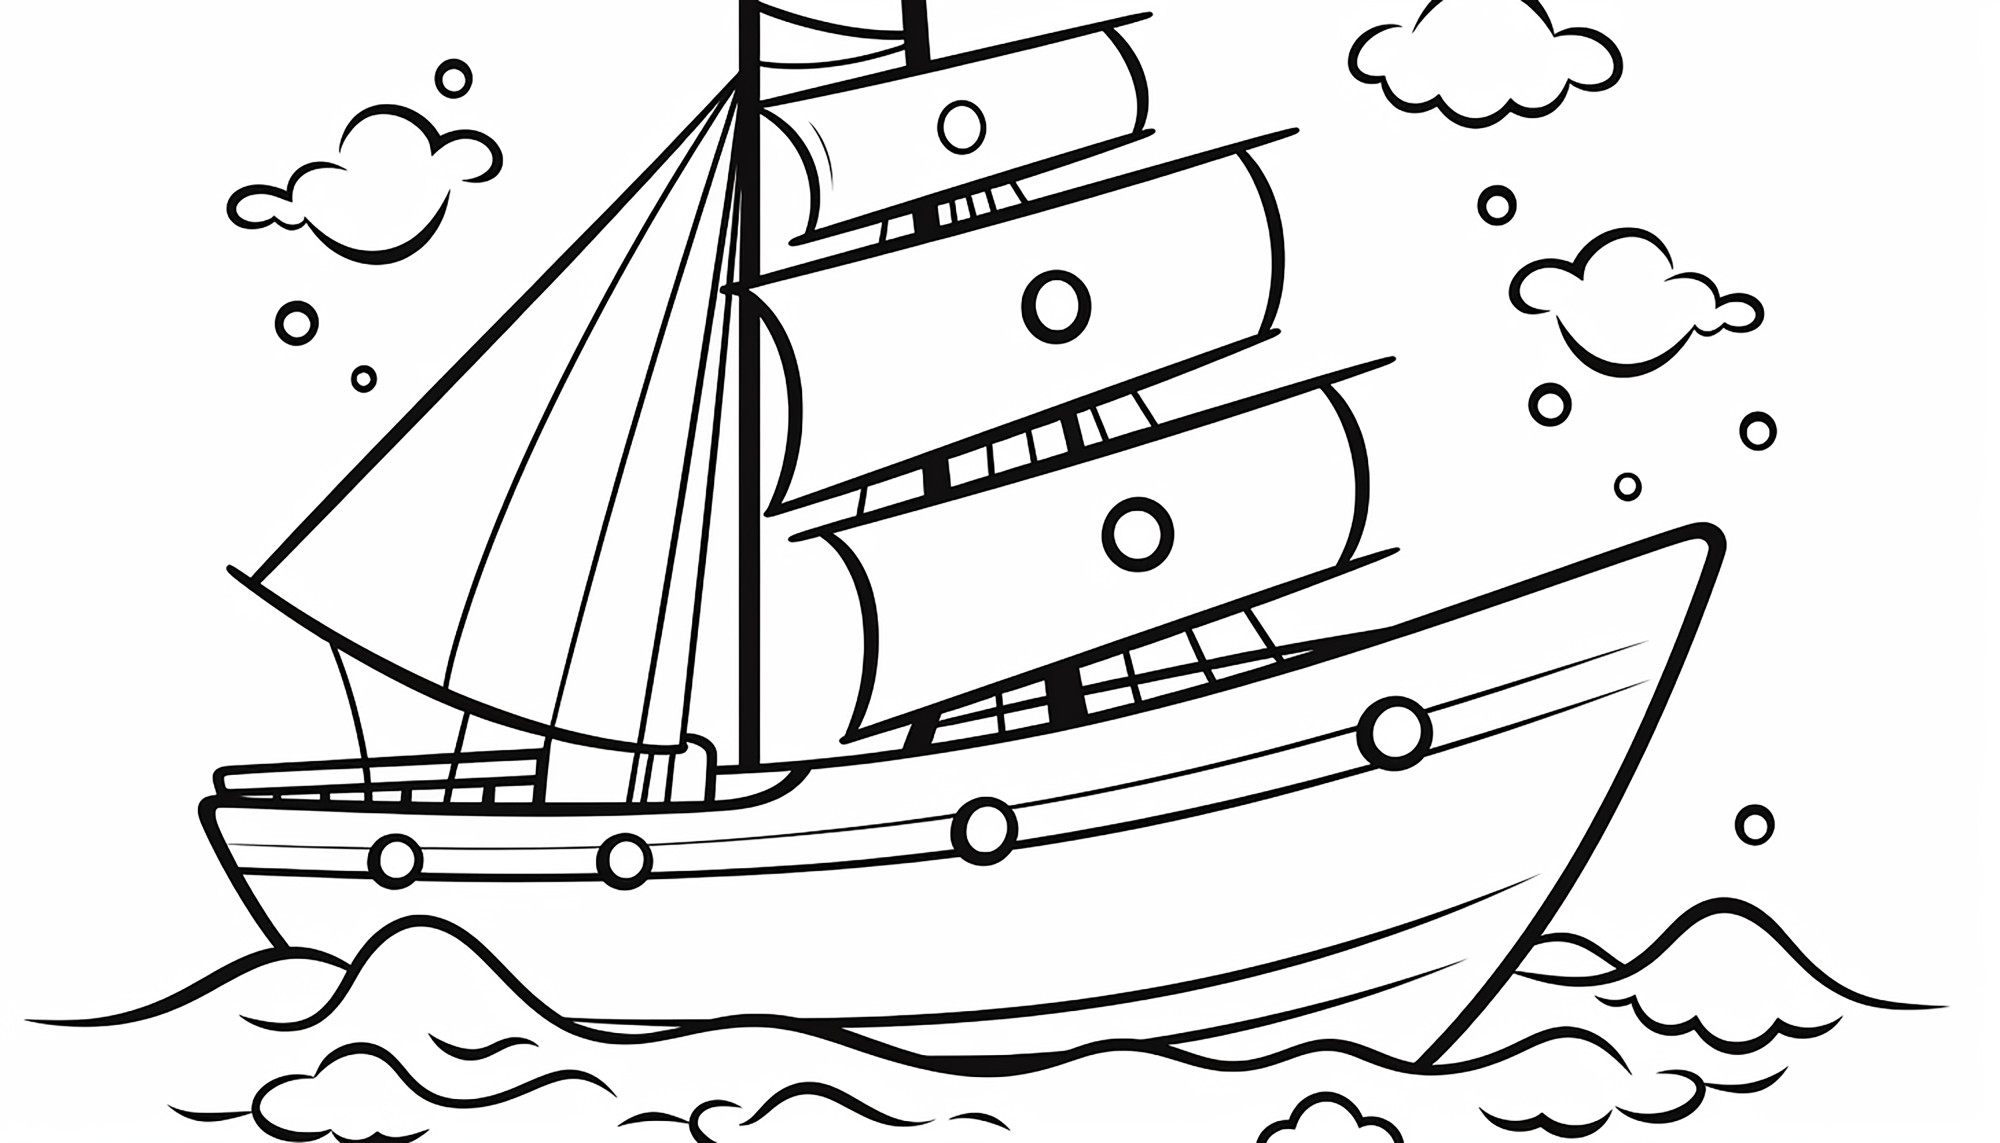 Раскраска для детей: маленький корабль в море «Паруса в мистическом свете»